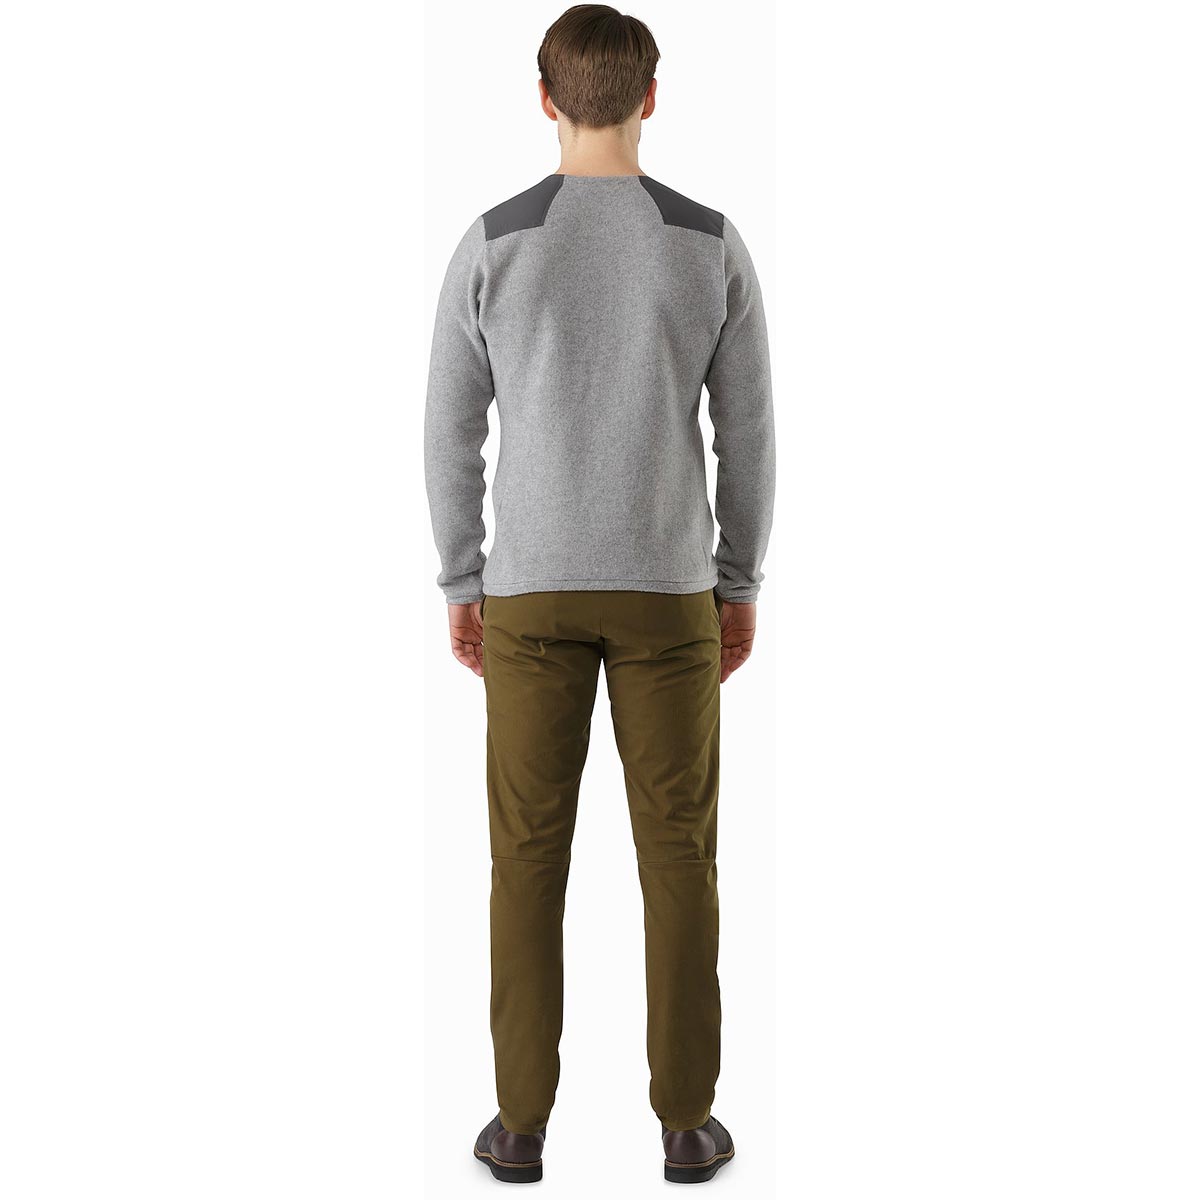 Arc'teryx Donavan Crew Neck Sweater, men's, Fall 2019 model 